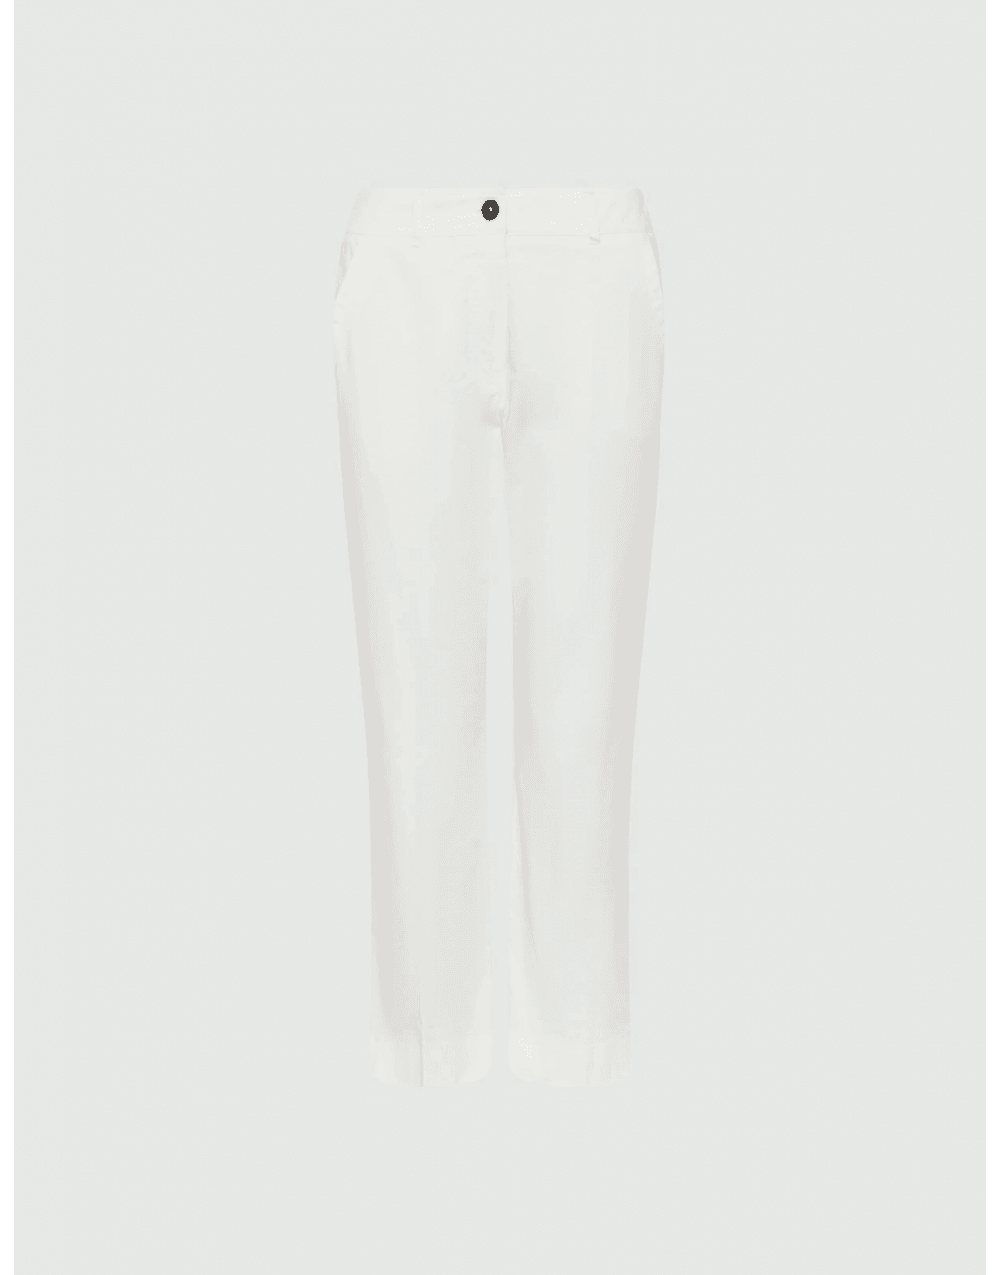 Marella Marella Editto Kick Flare Trouser Size: 16, Col: White